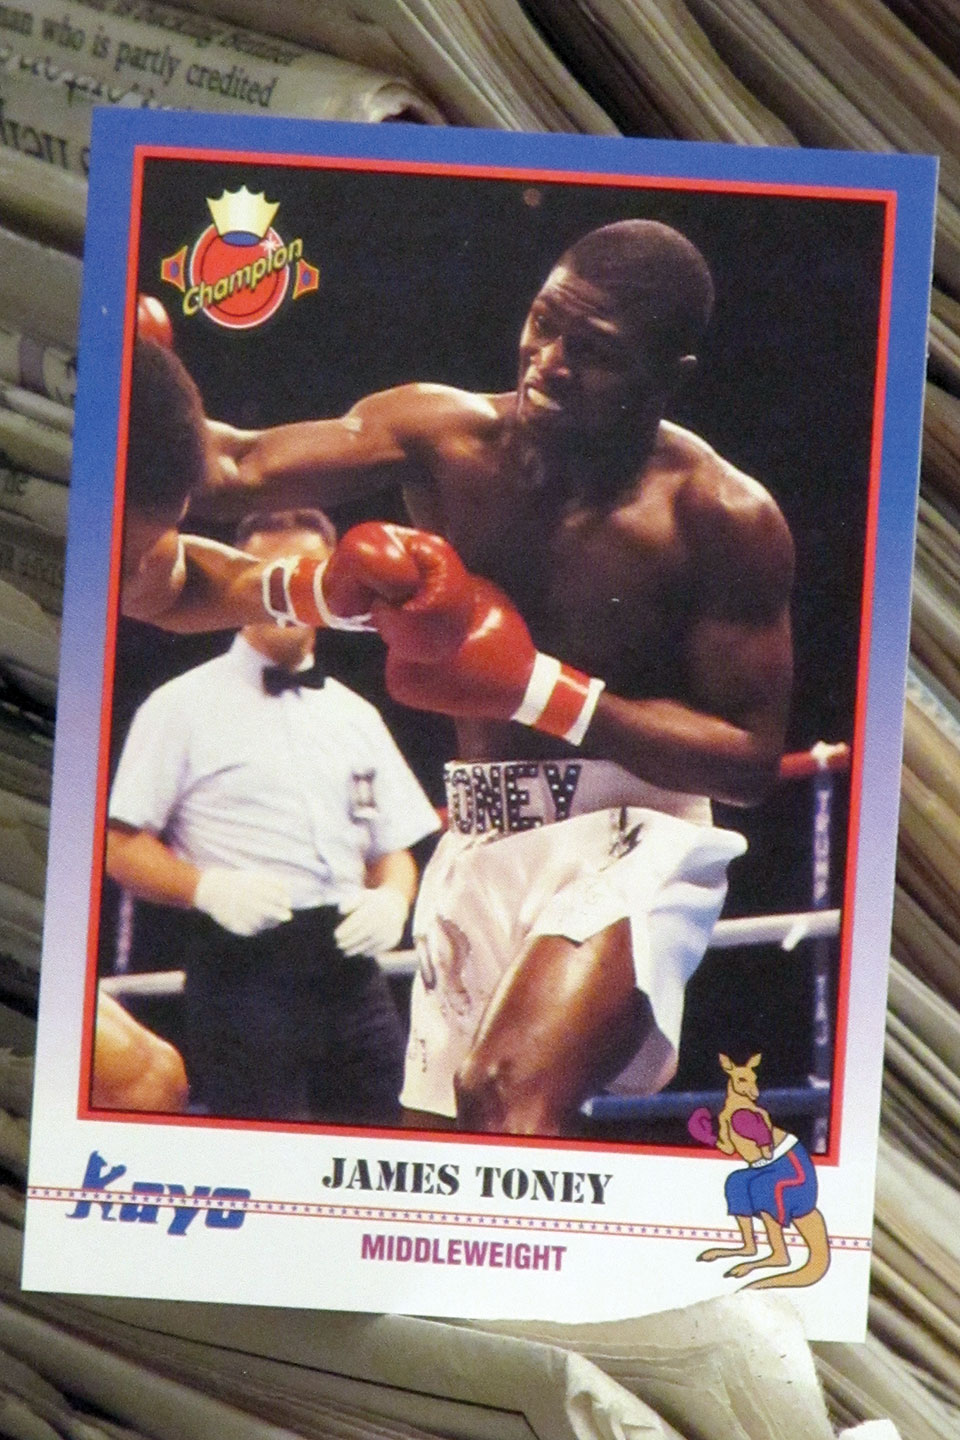 James Toney, headliner of tonight's "Rumble in the Rockies II"